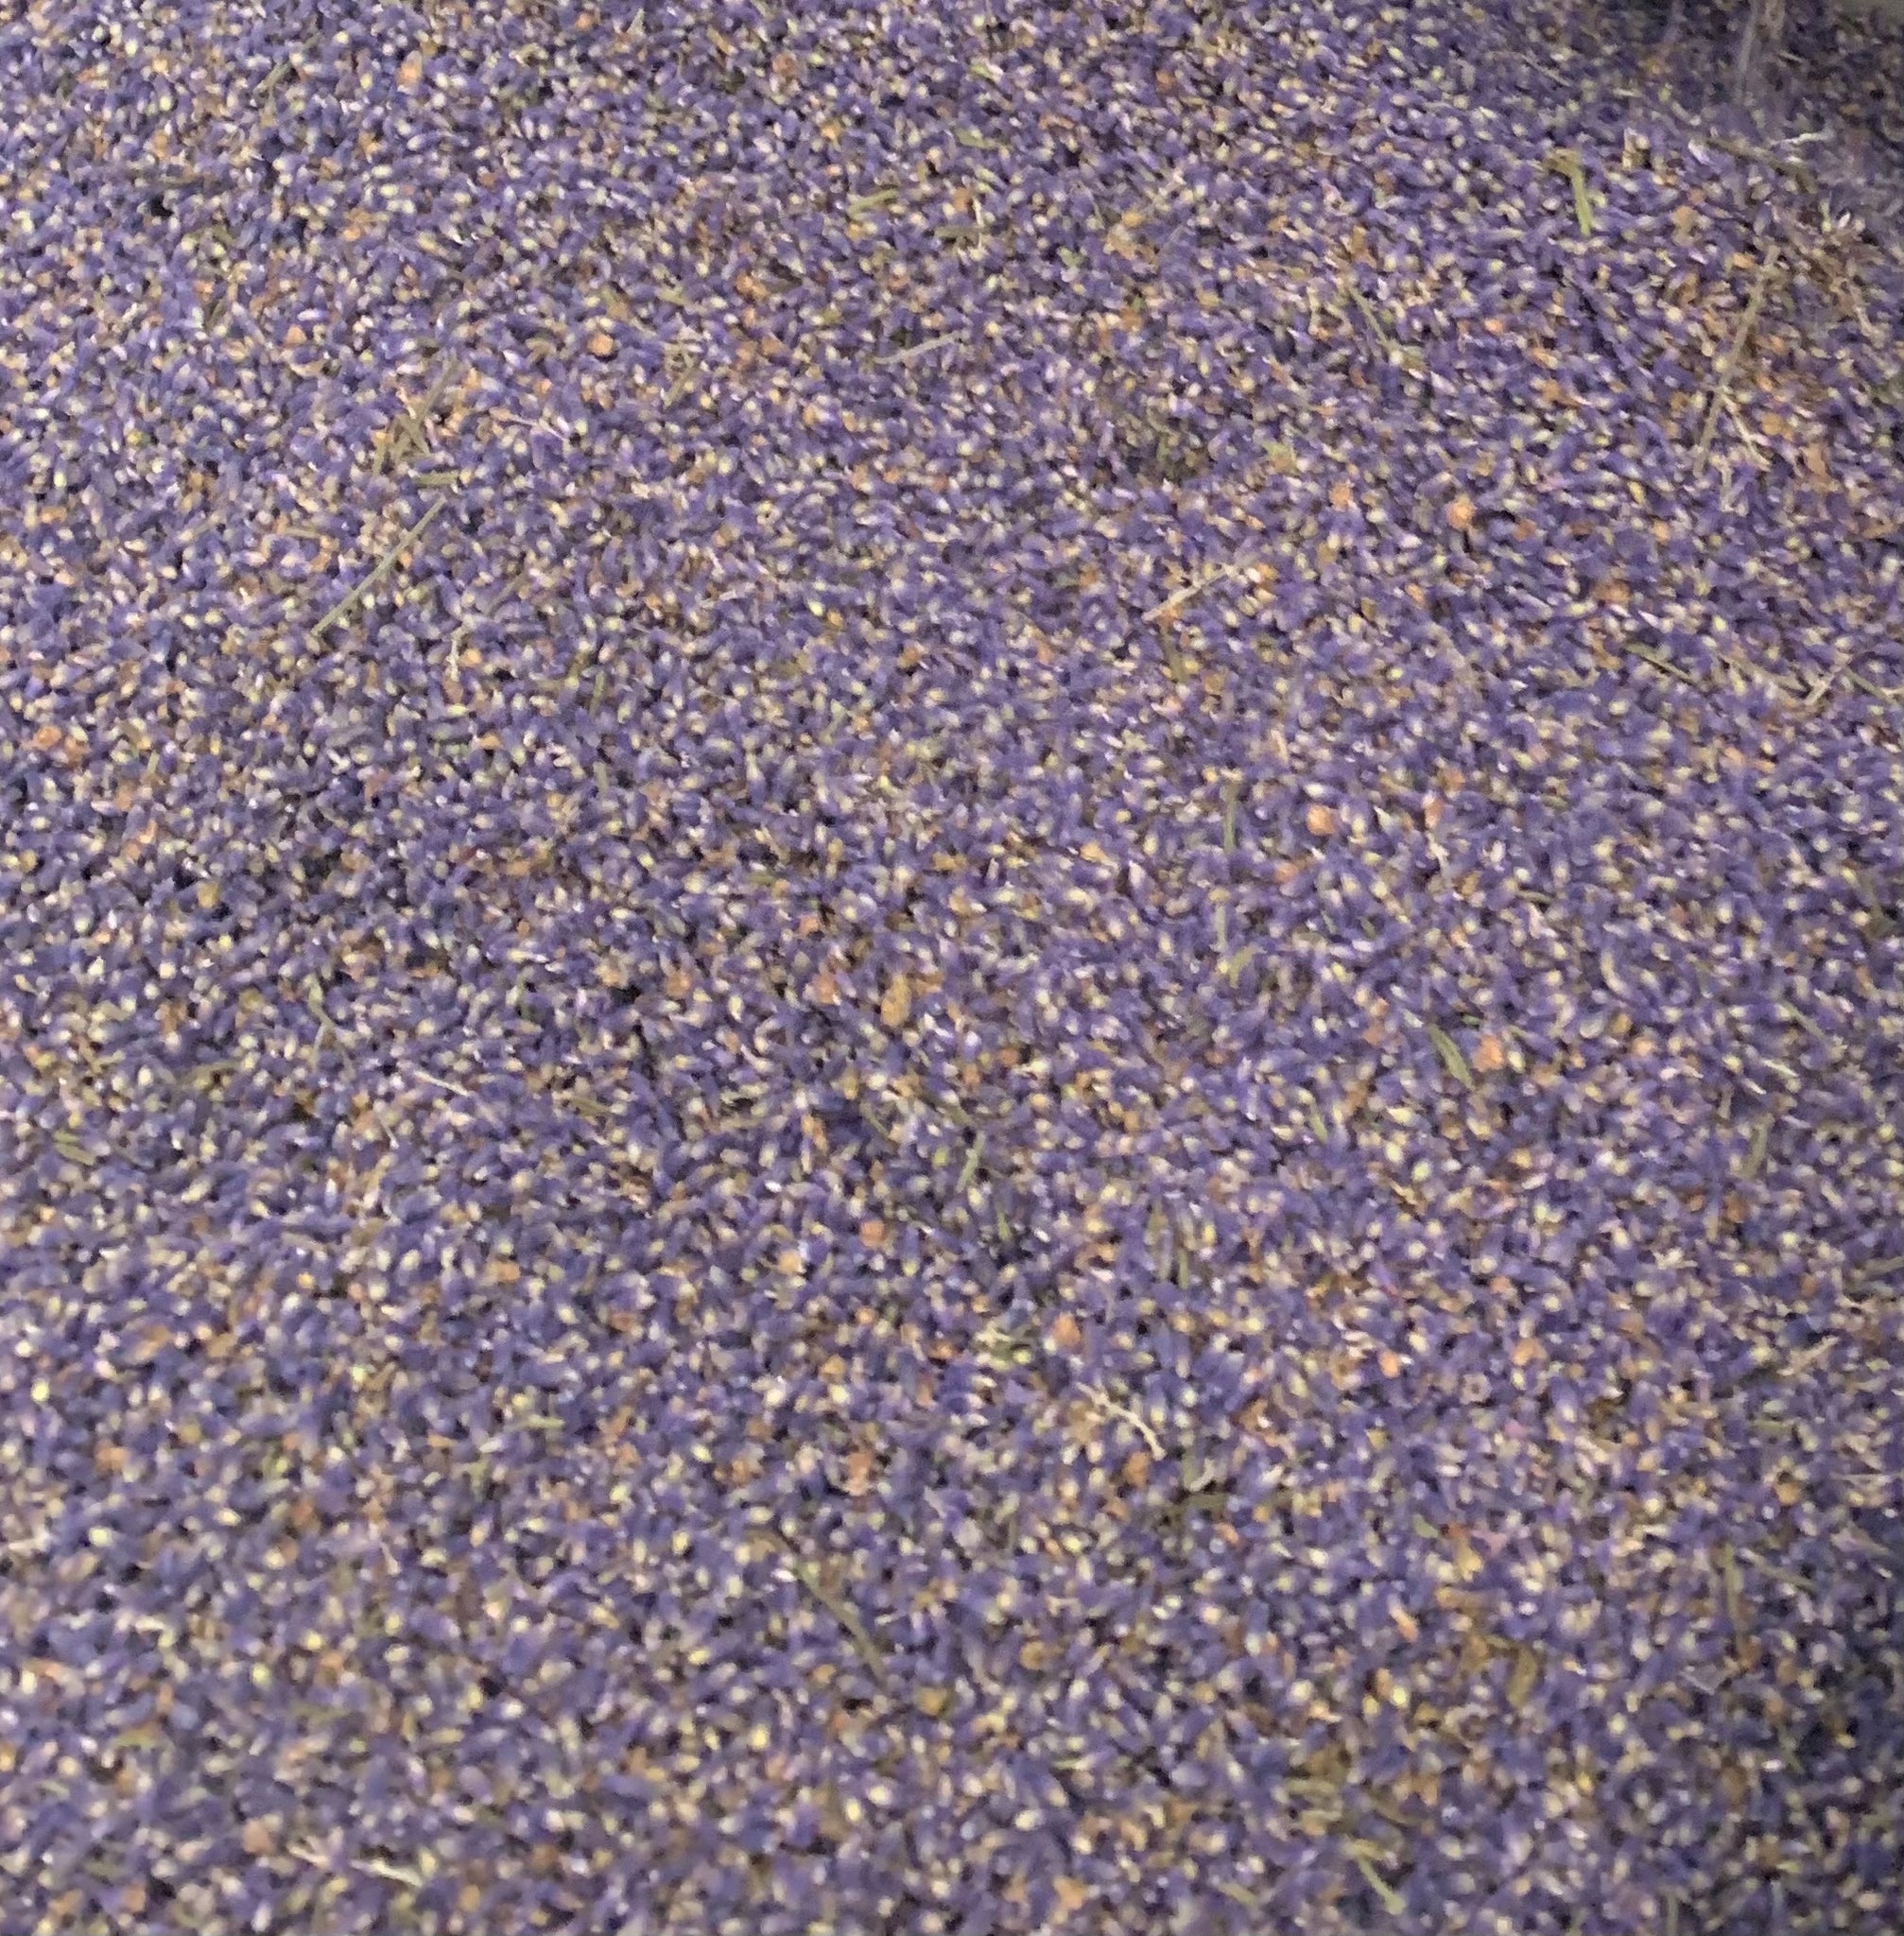 Hidcote English Lavender buds